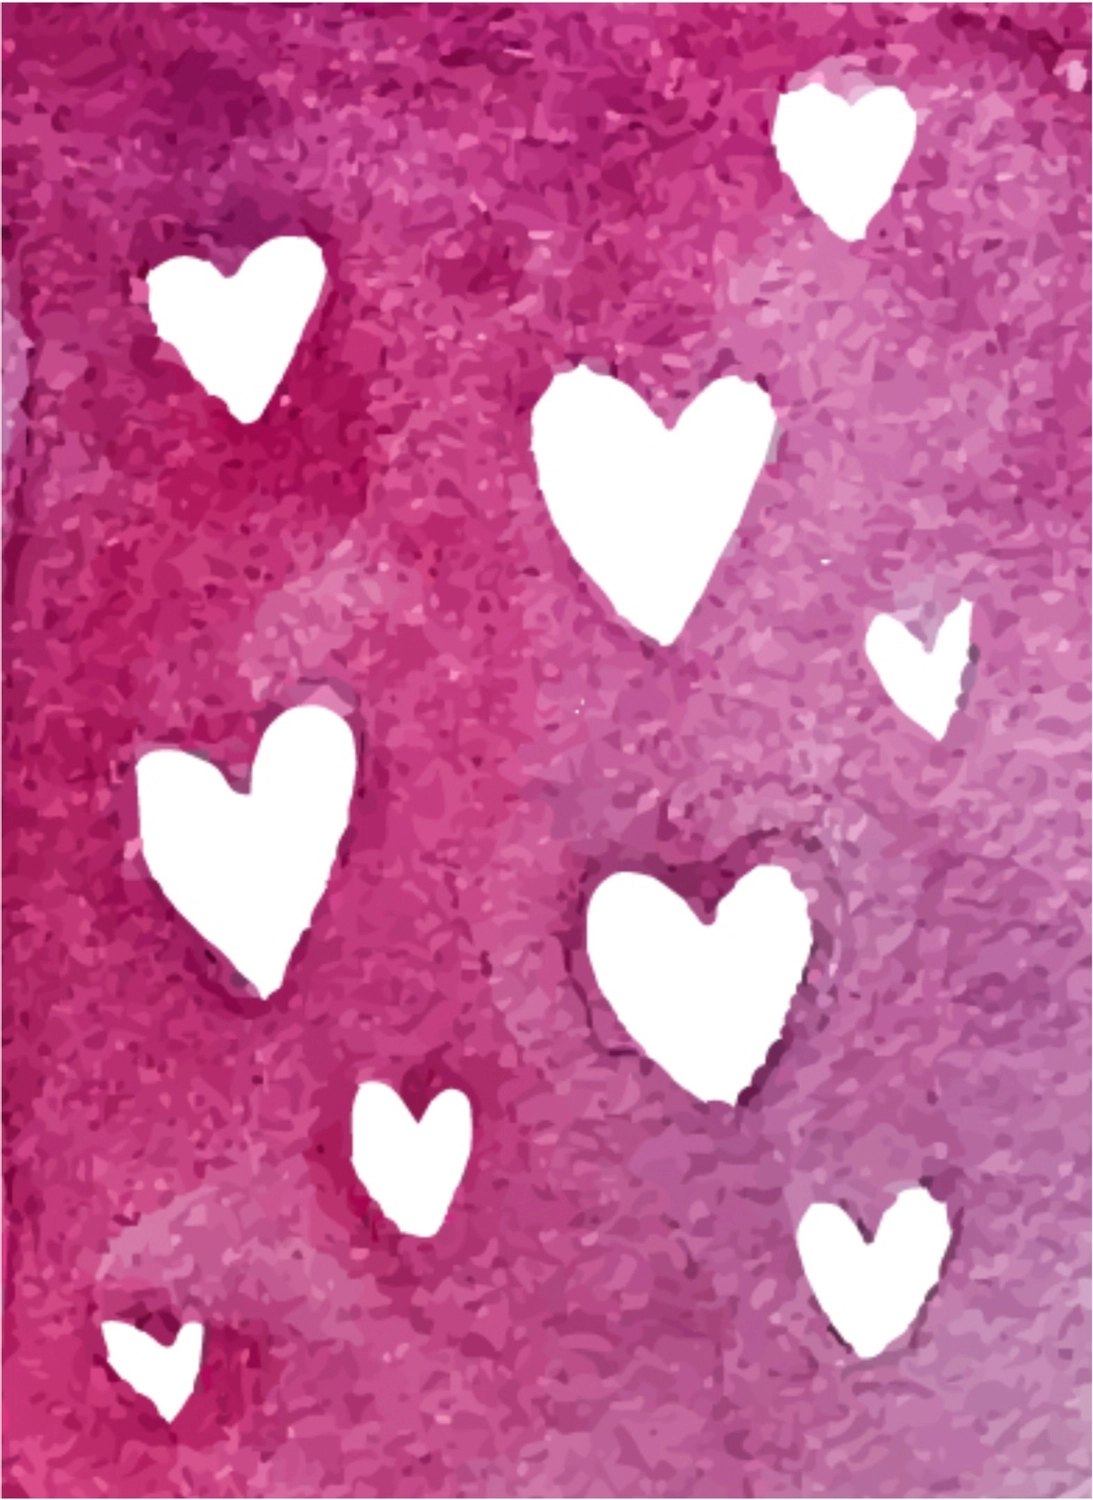 バレンタインデーグリーティングカード　紫地に白抜きのハート, 手描き, 作成, デザイン, メッセージカードテンプレート